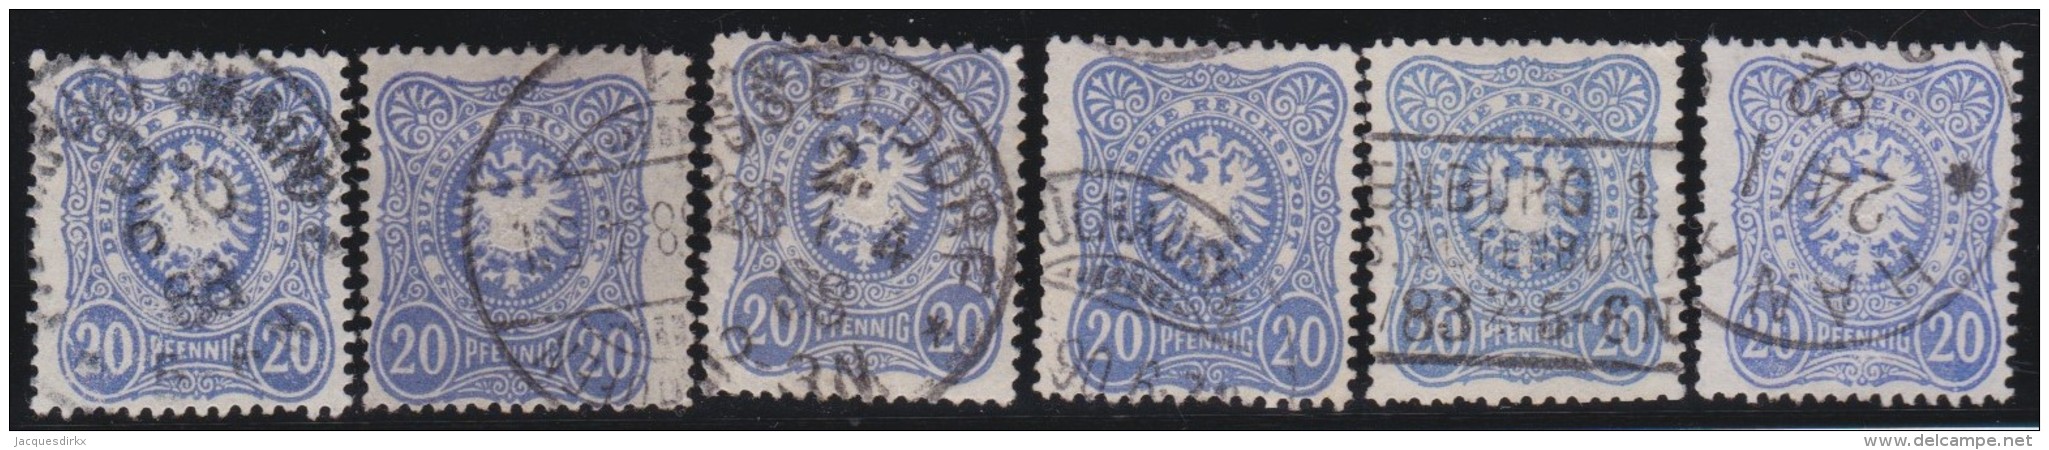 Deutsches Reich     .    Michel      .     42   6x         .         O      .    Gebraucht  .   /  .   Cancelled - Used Stamps